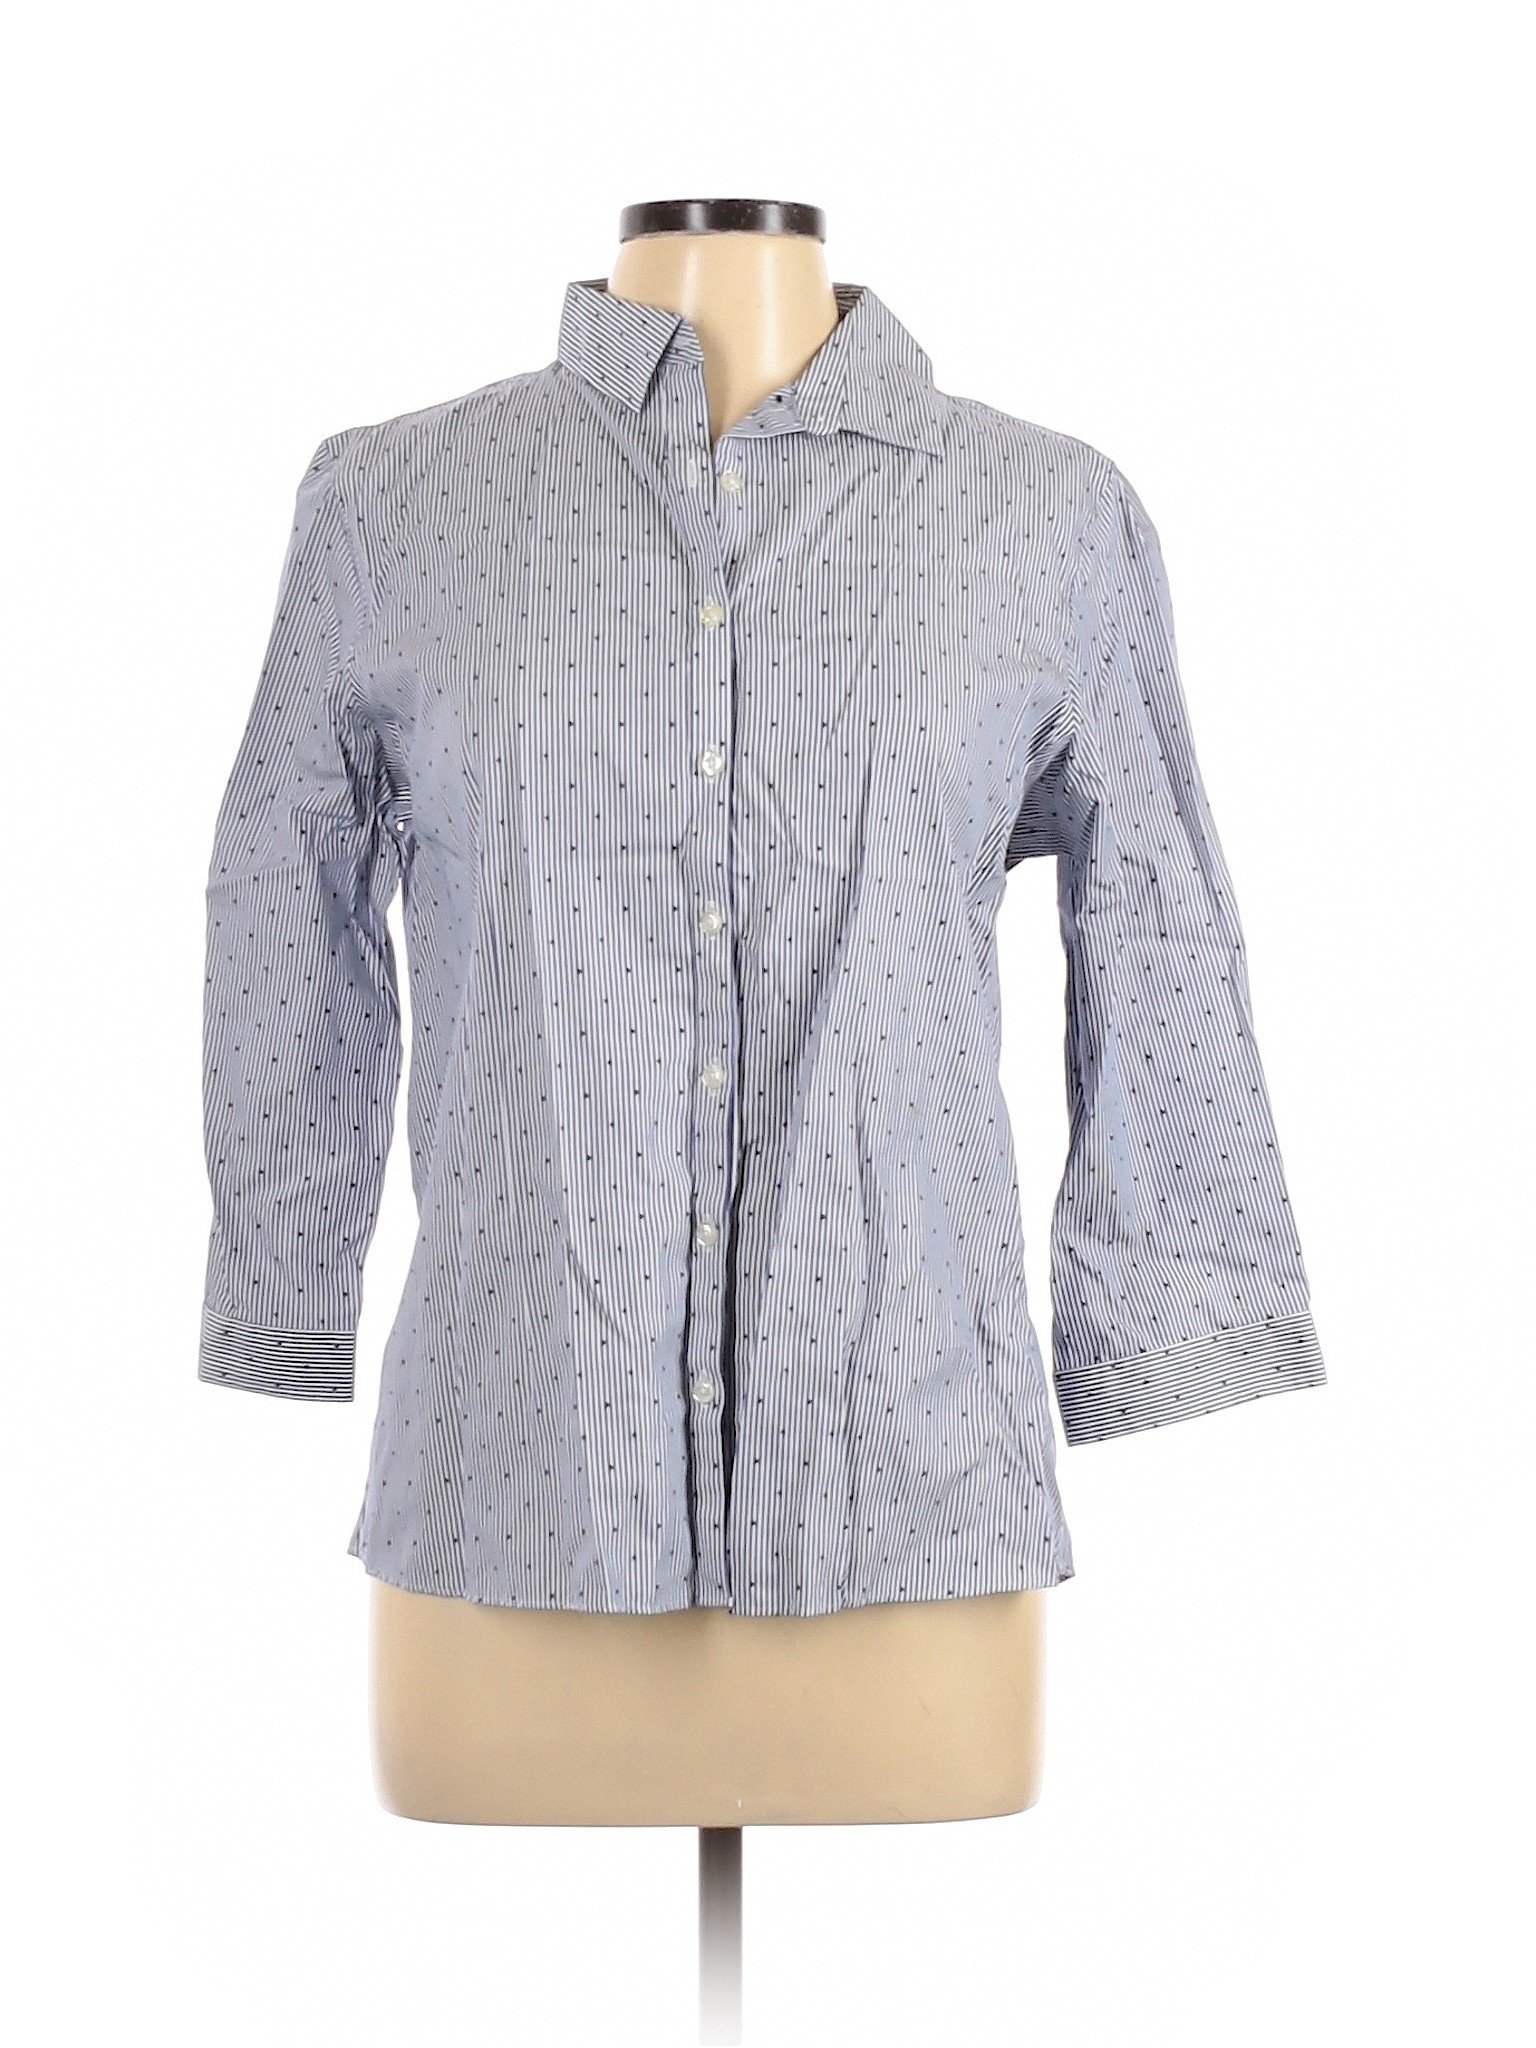 Lands' End Women Gray 3/4 Sleeve Button-Down Shirt 12 | eBay